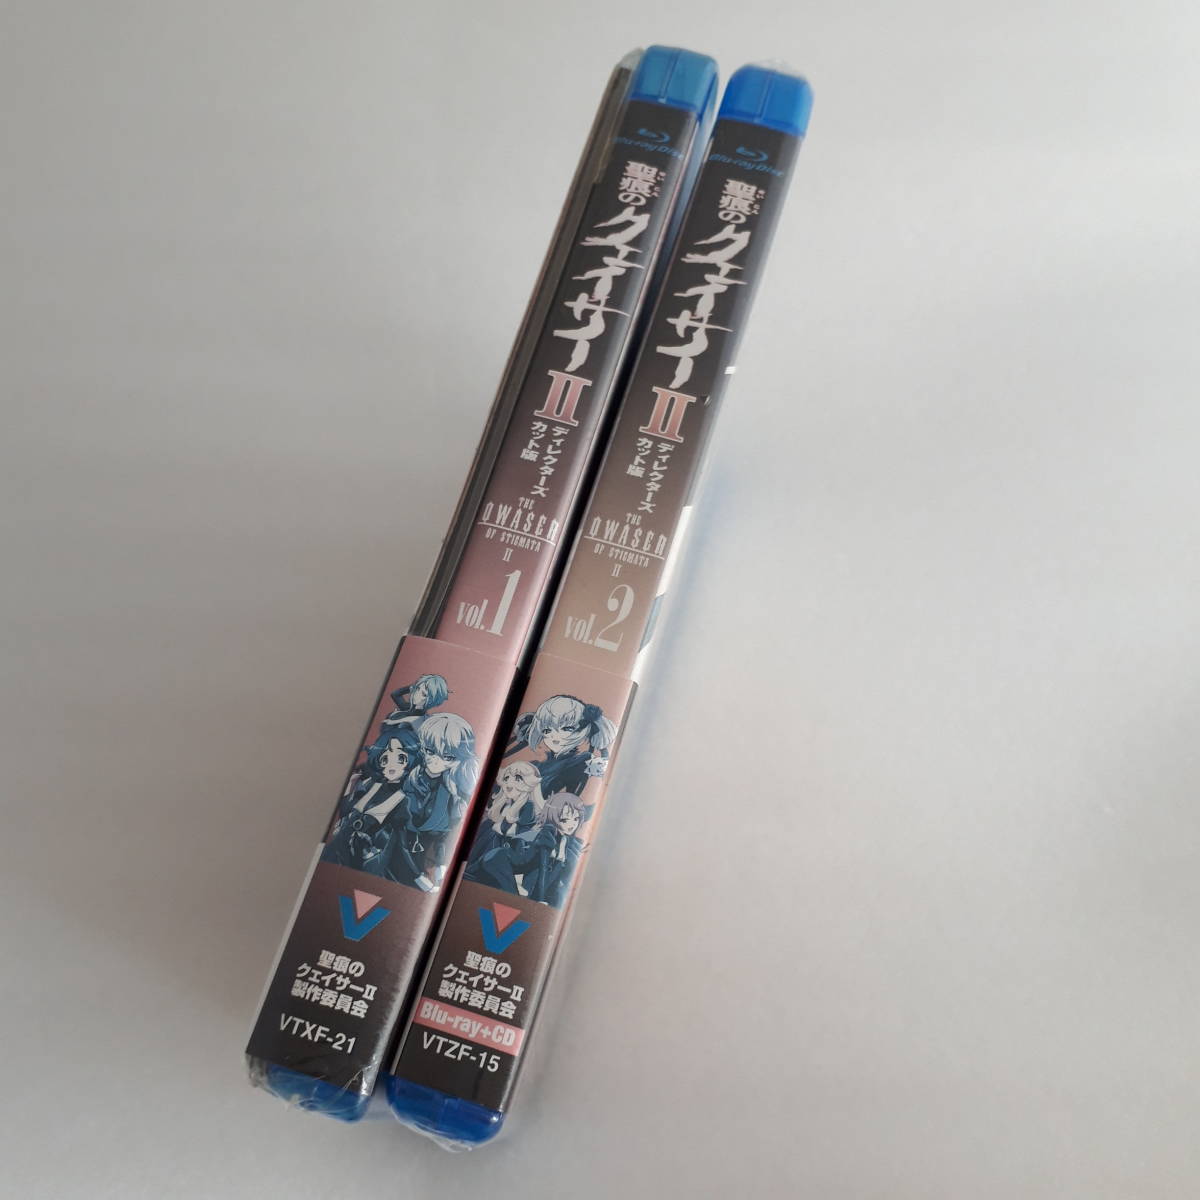 未開封 Blu-ray 聖痕のクェイサー Ⅱ ディレクターズカット版 Vol.1 Vol.2 第1巻 第2巻 セット 初回特典 マウスパッド ドラマCD付